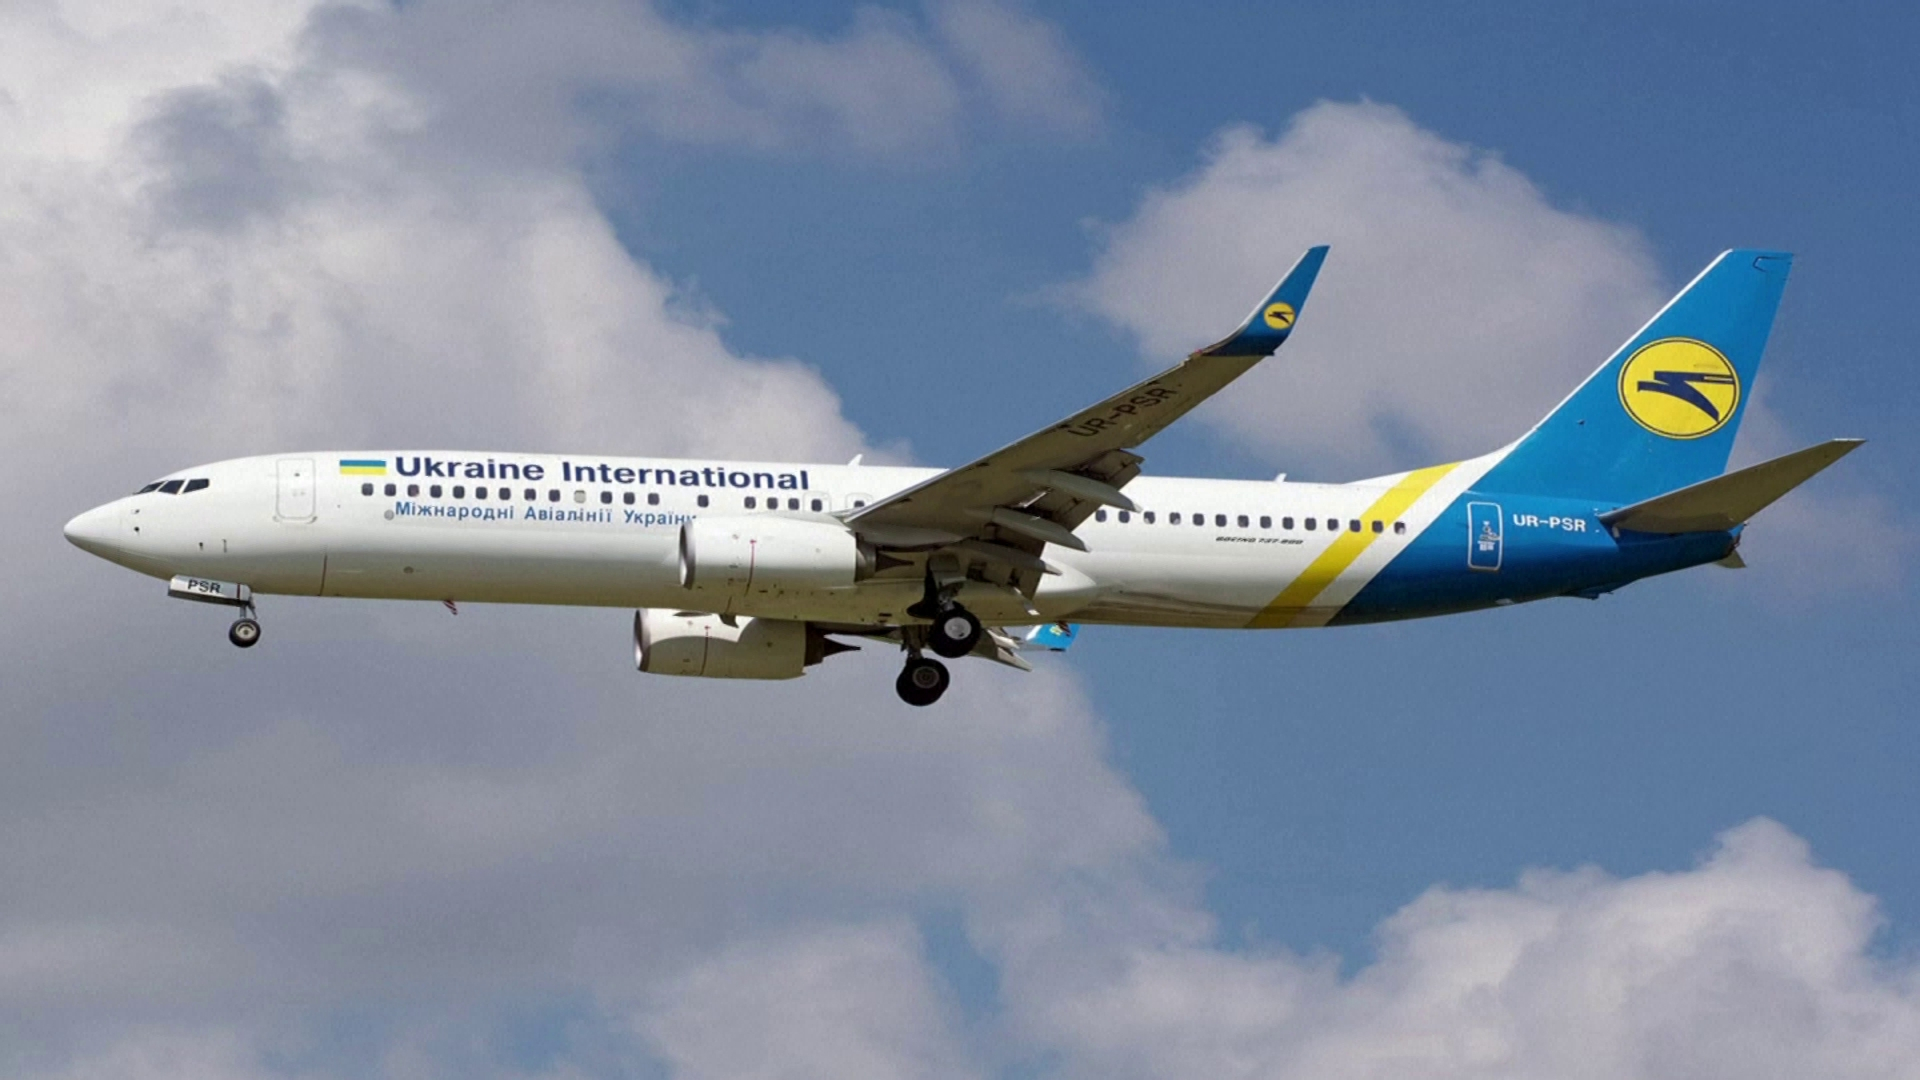 Иран отказался выплатить компенсацию за разбившийся самолет из Украины